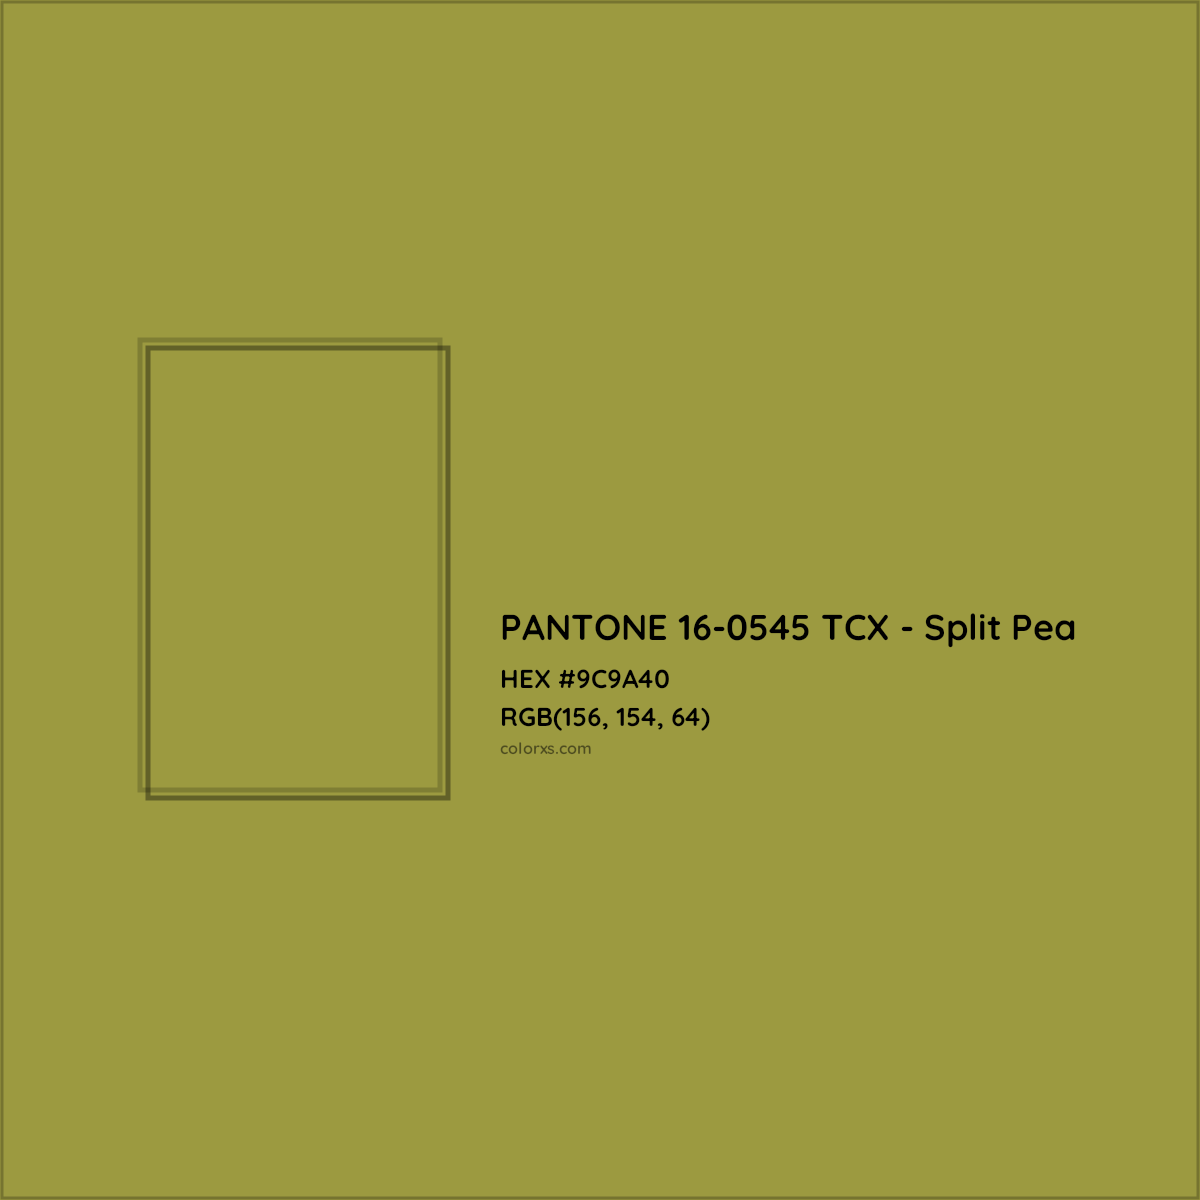 HEX #9C9A40 PANTONE 16-0545 TCX - Split Pea CMS Pantone TCX - Color Code